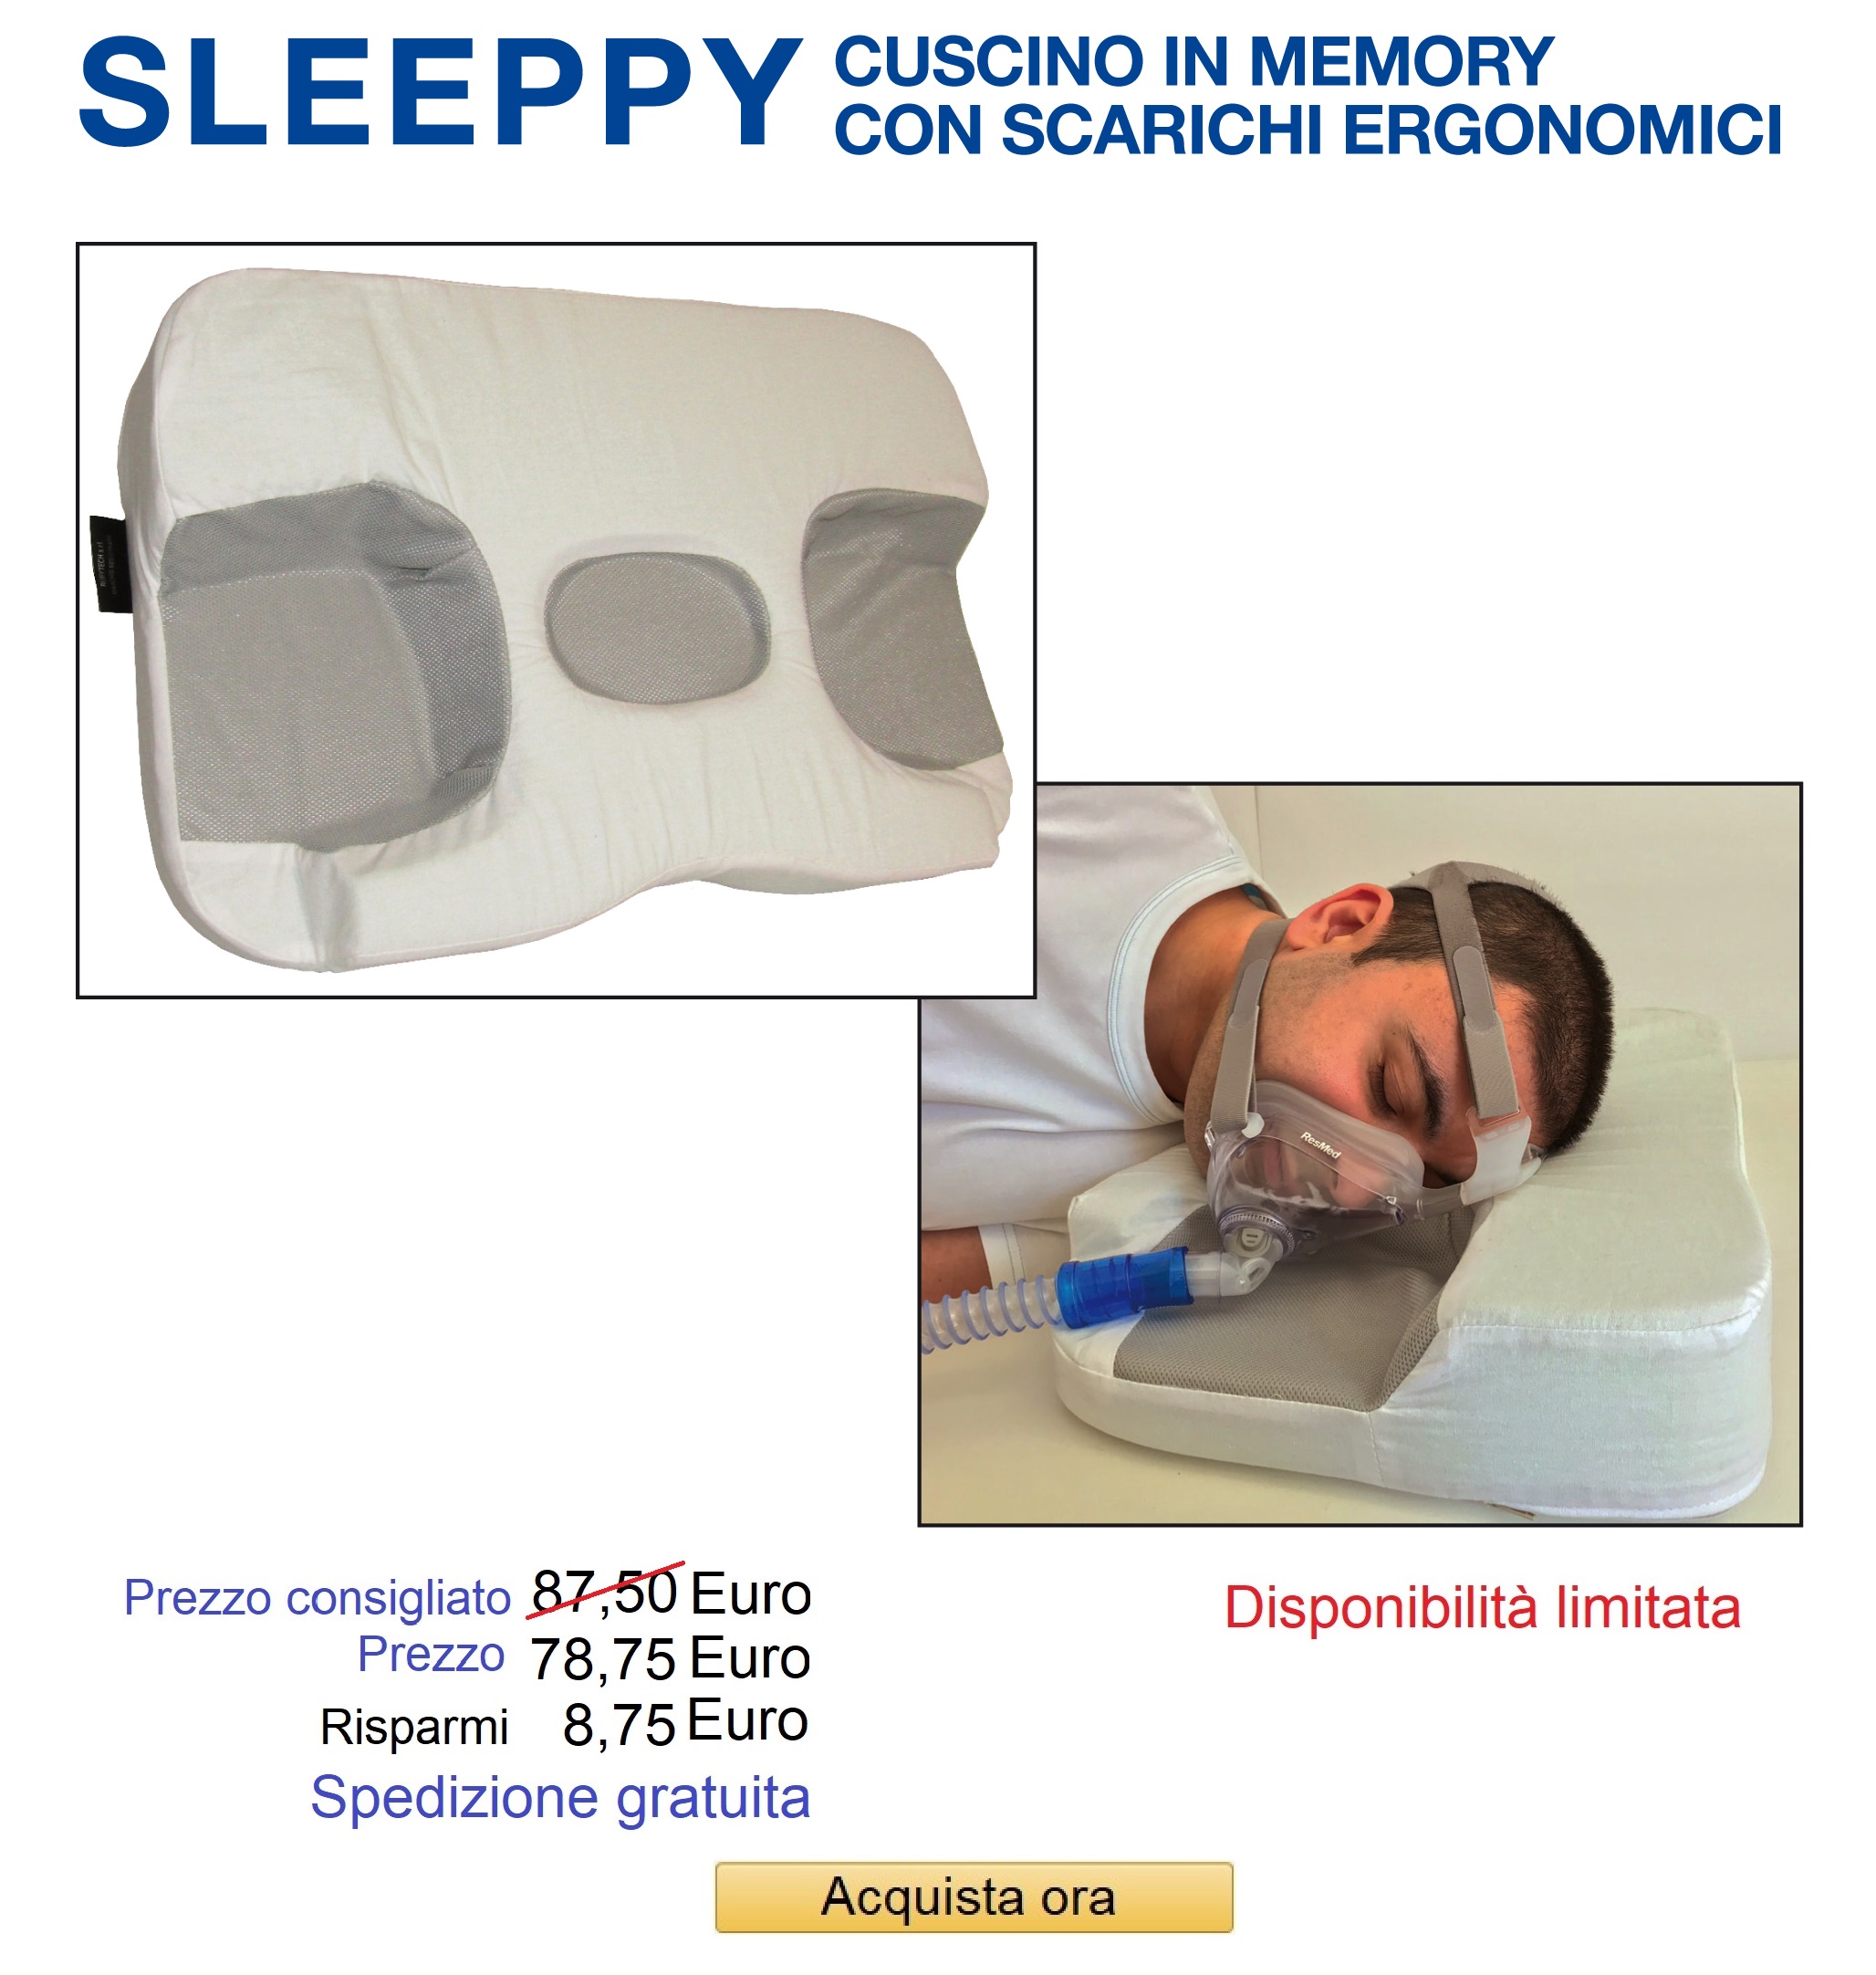 cuscino-Sleeppy-mascherina-CPAP